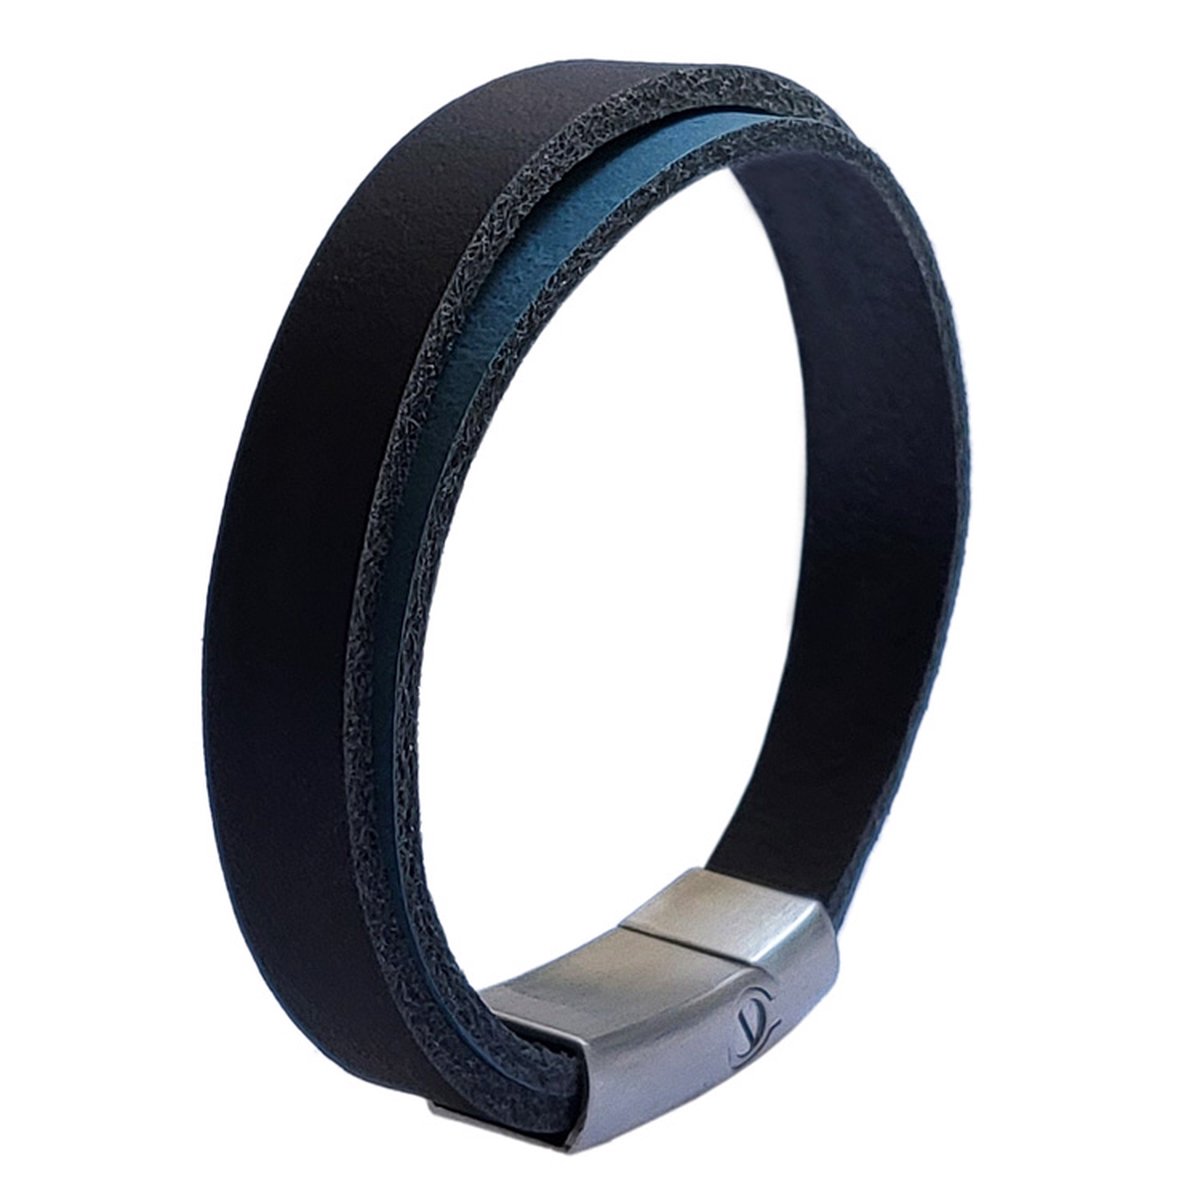 As armband Double schuifsluiting zwart-blauw 20 cm